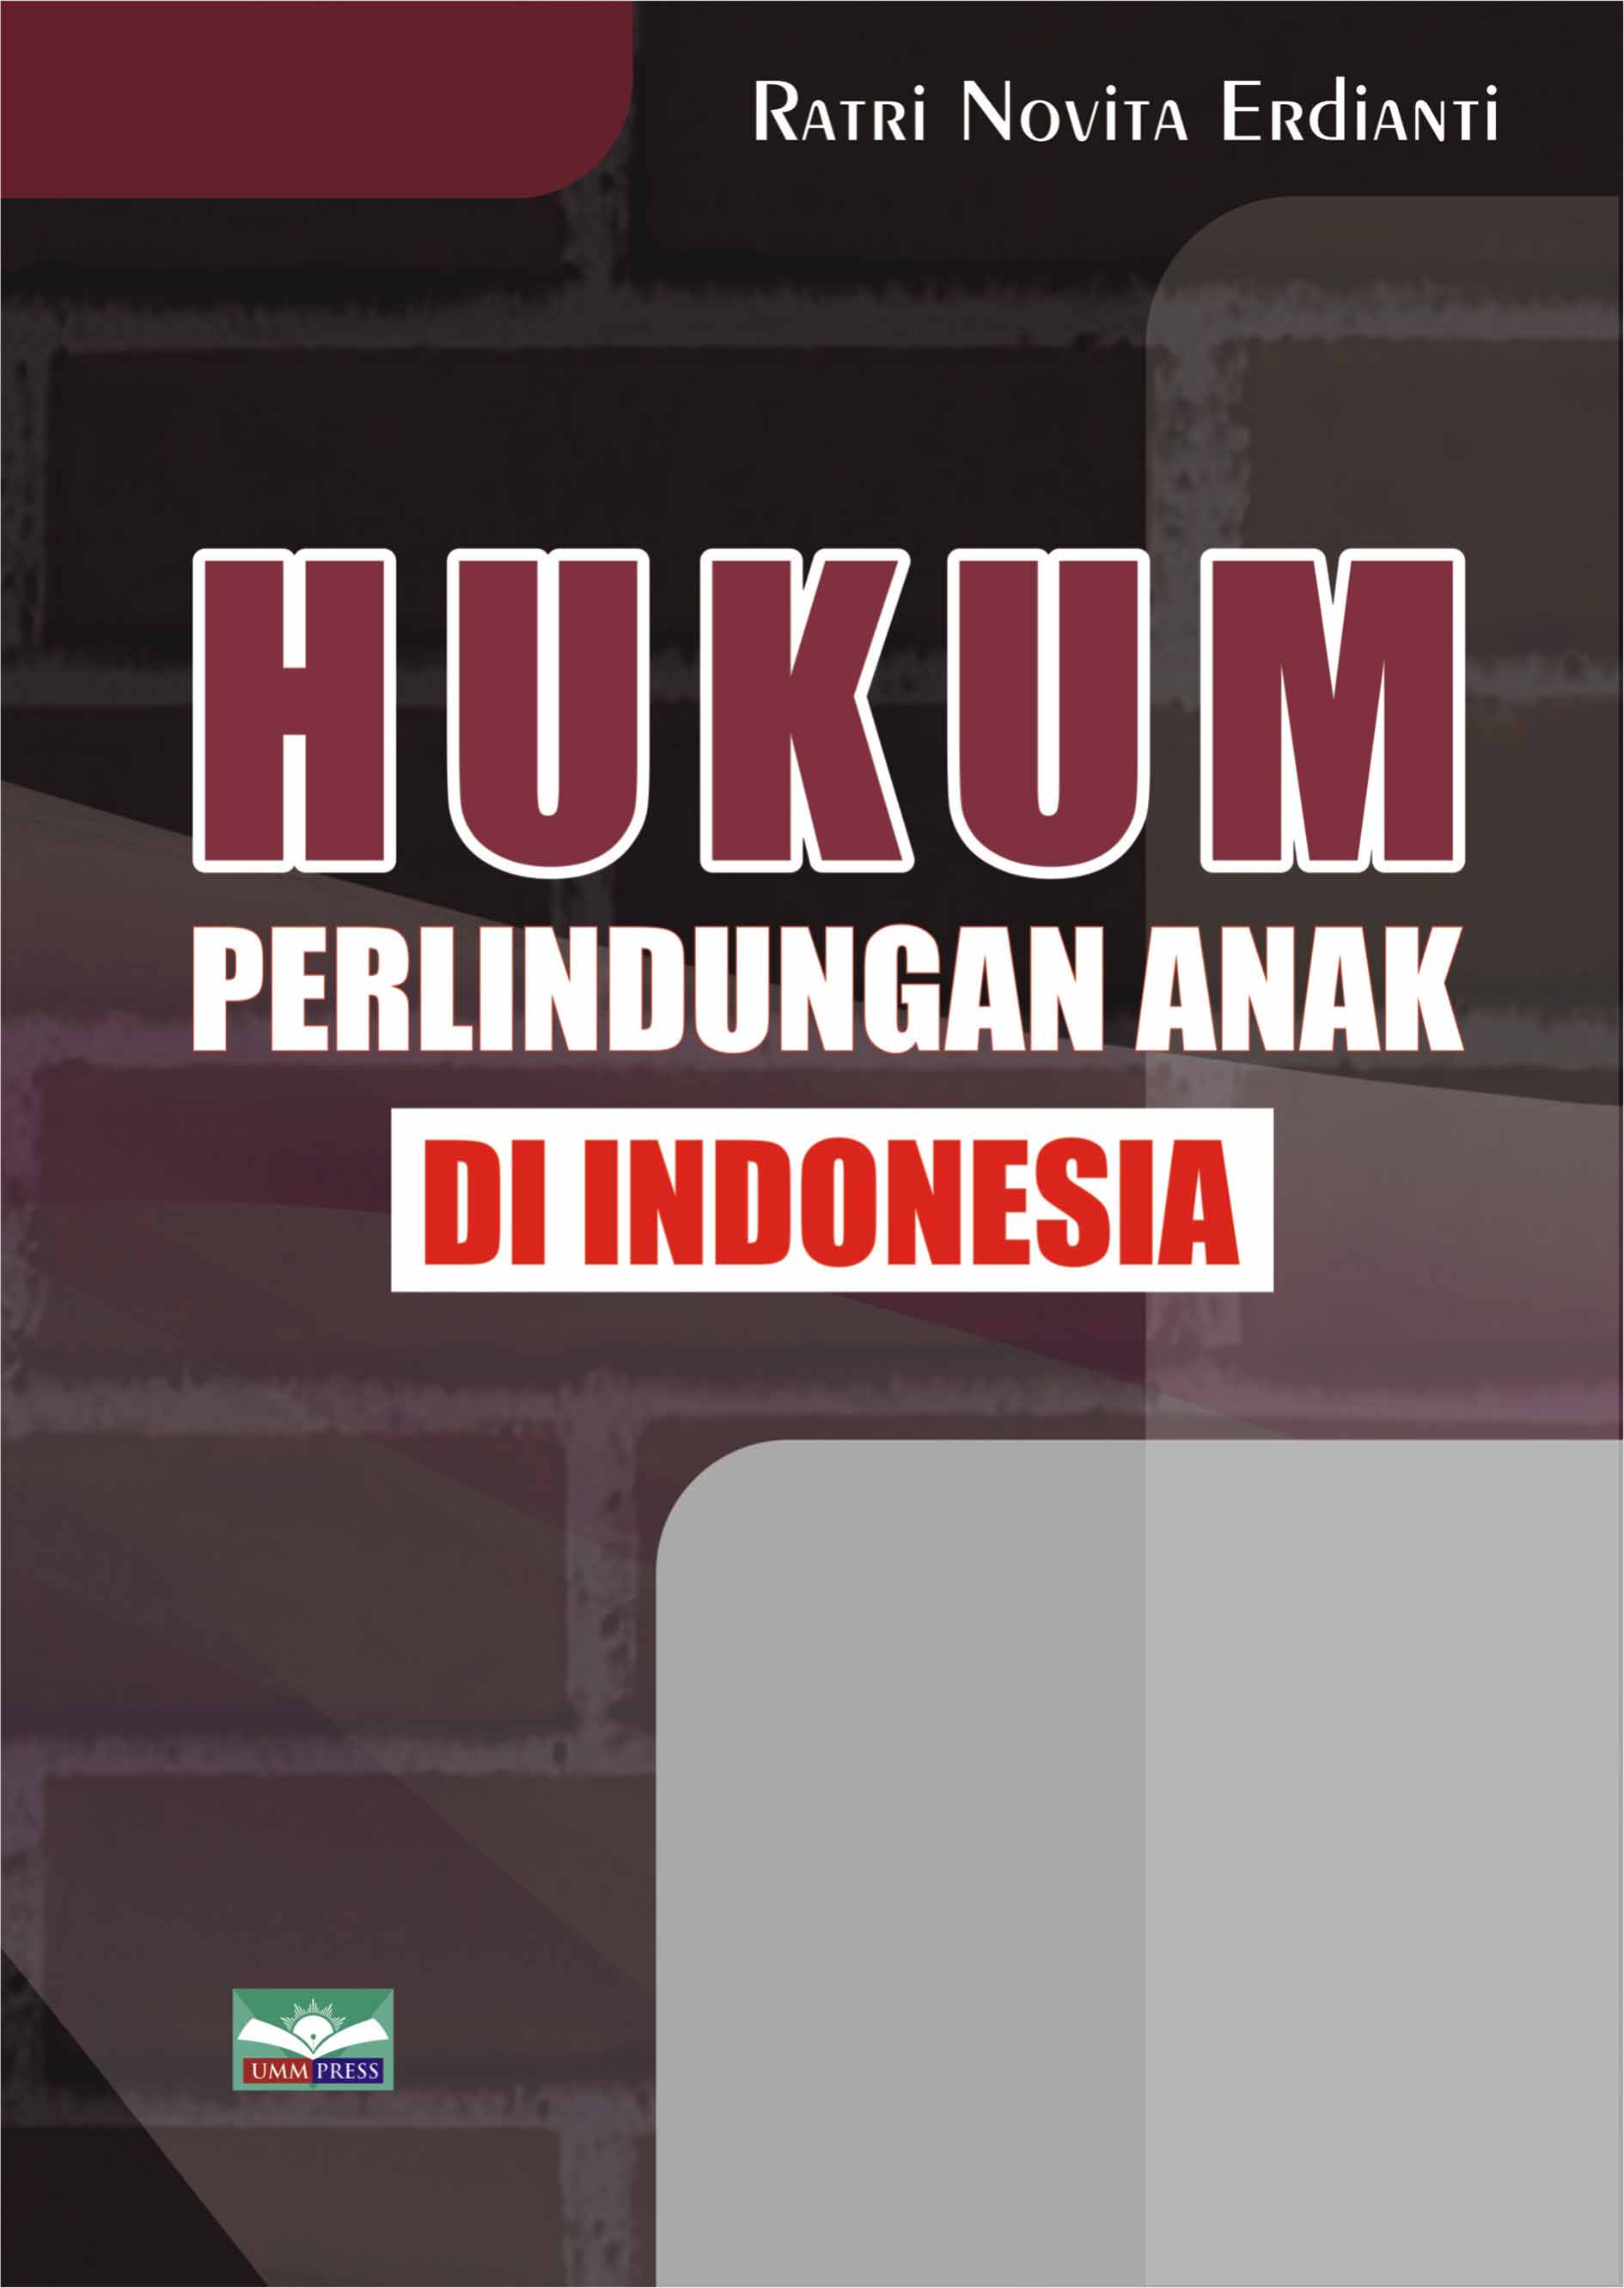 HUKUM PERLINDUNGAN ANAK DI INDONESIA